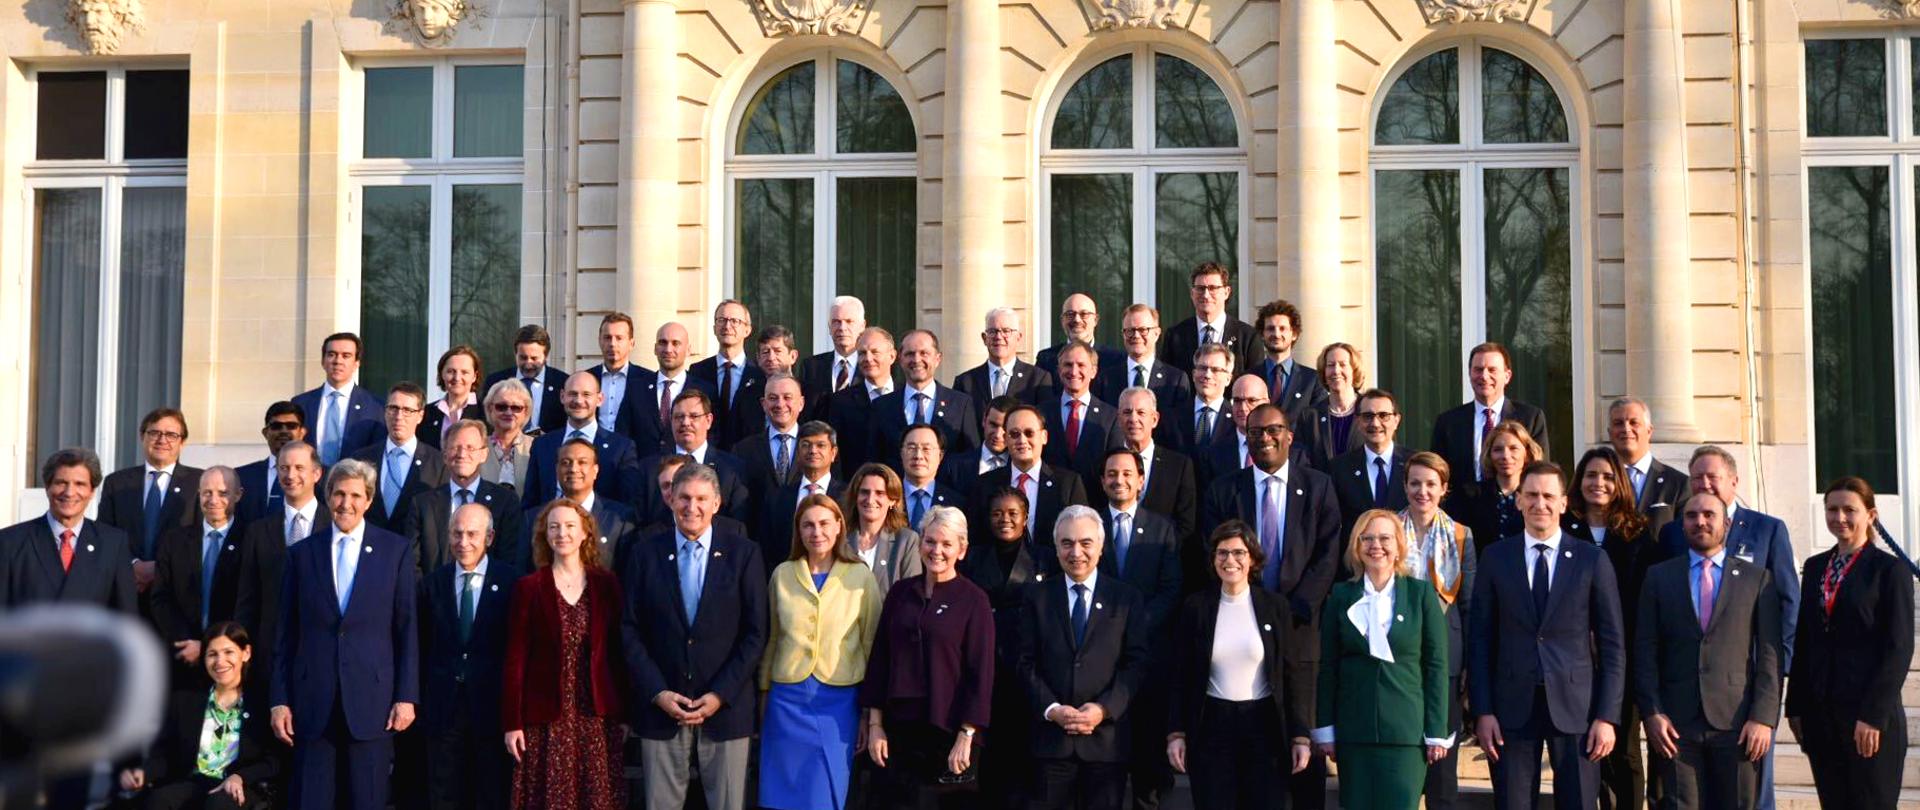 Zdjęcie grupowe ministrów obecnych na ministerialnym spotkaniu Międzynarodowej Agencji Energetycznej w Paryżu.